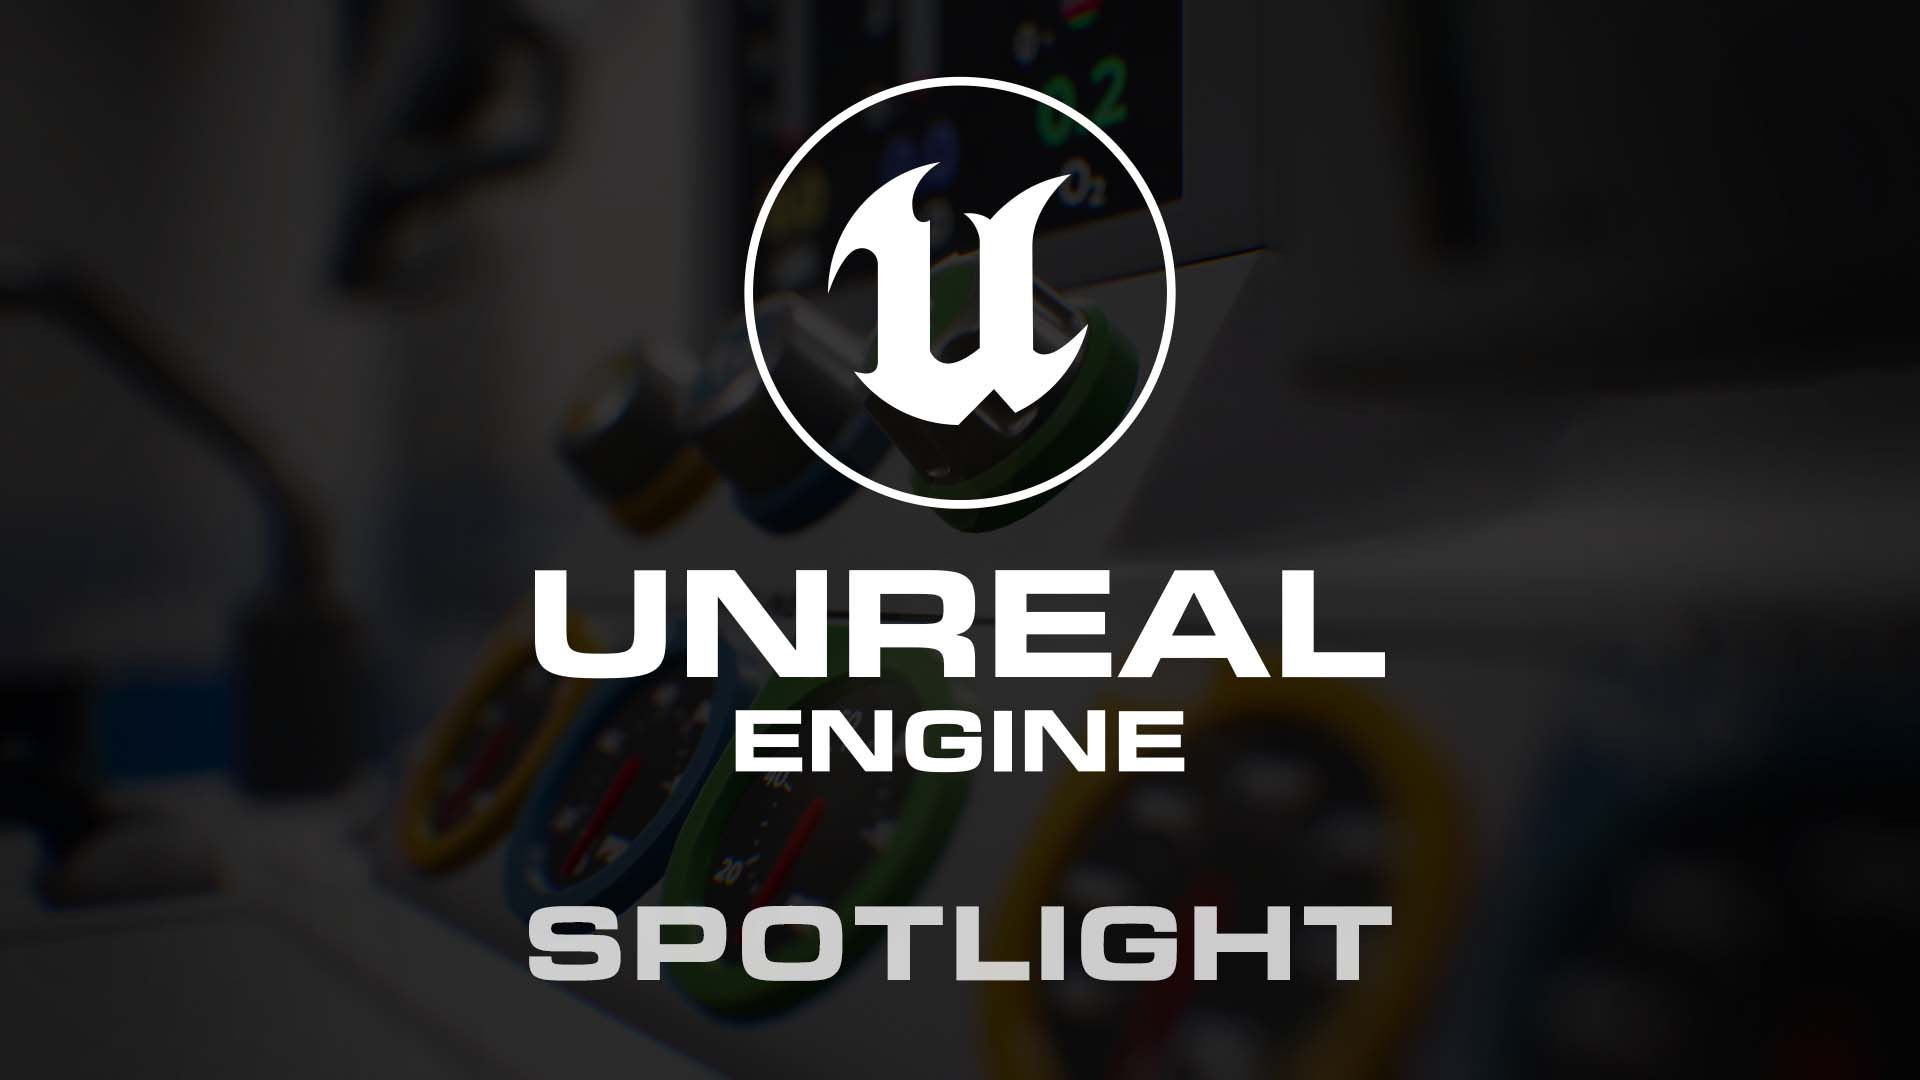 UnrealEngineSpotlight2020_header